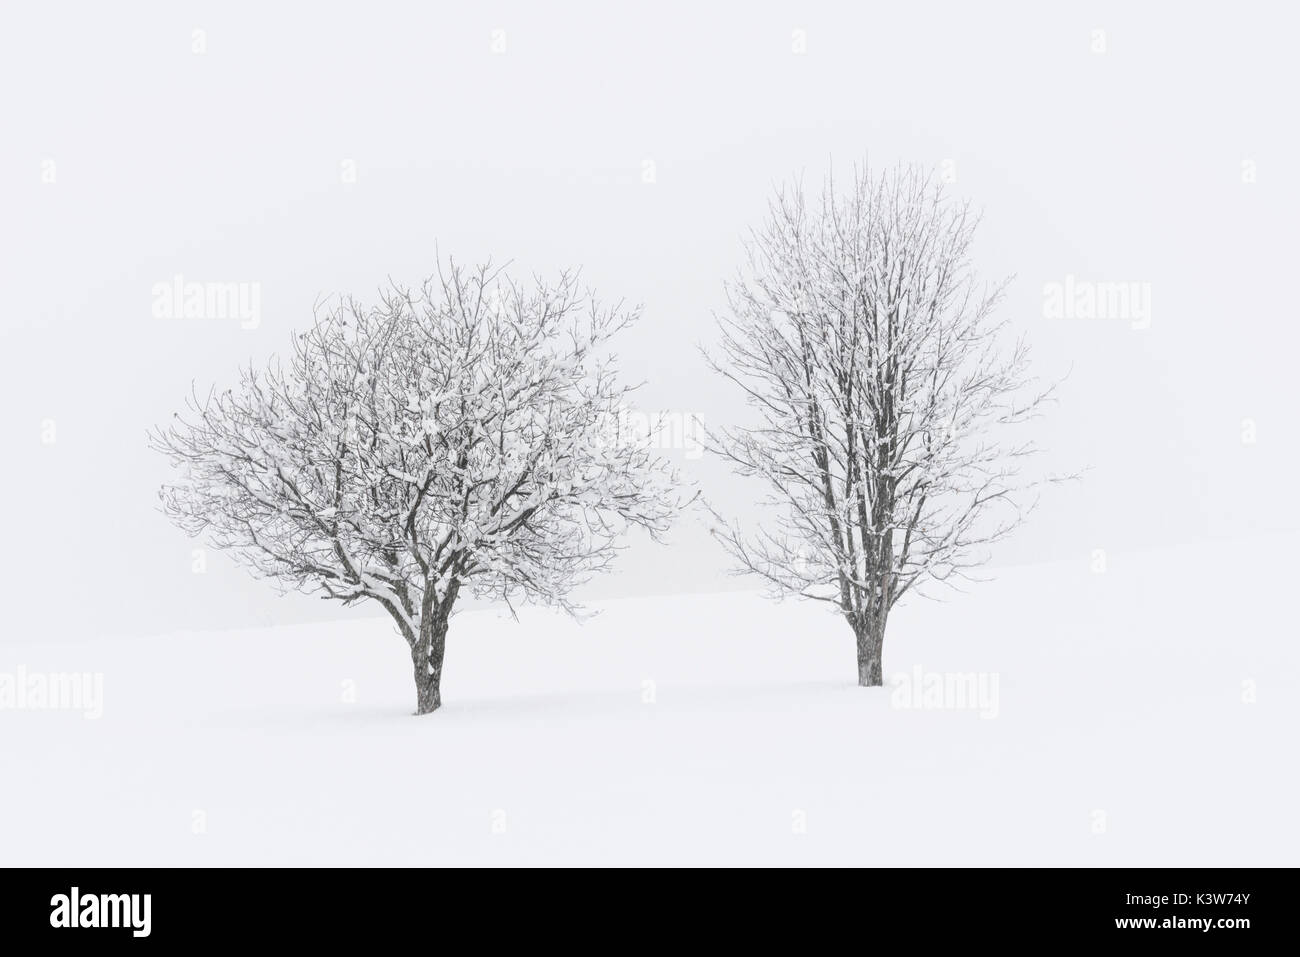 L'Europe, Italie, Trentin-Haut-Adige, vallée de Non. Arbres couverts de neige après une importante chute de neige. Banque D'Images